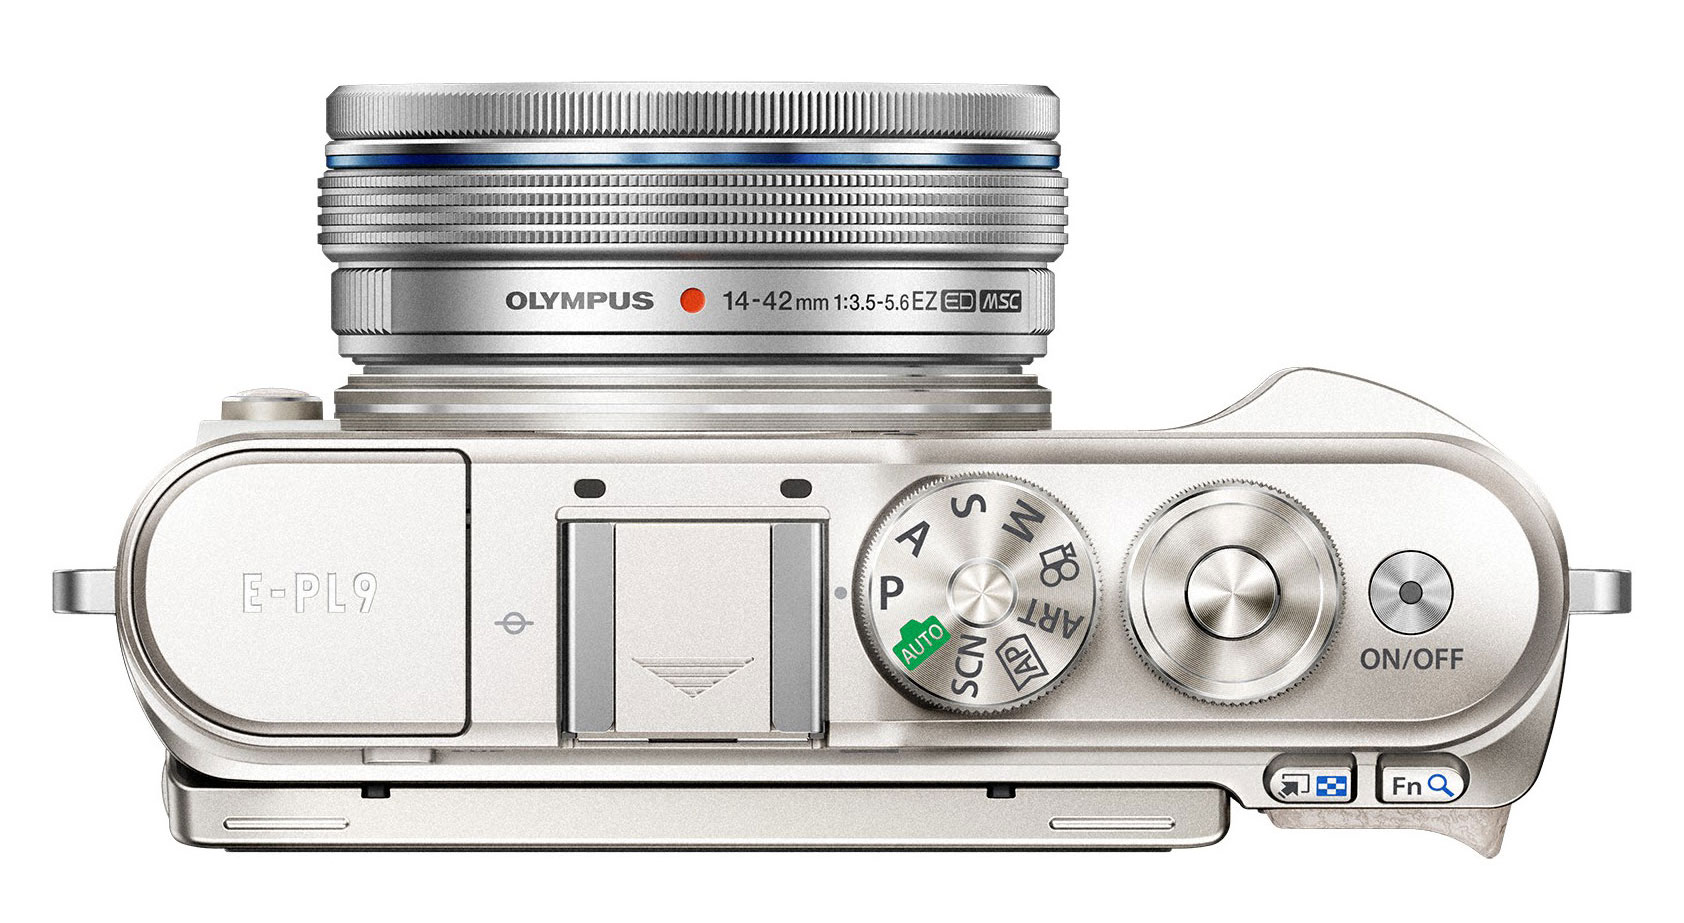 Đang tải Olympus PEN E-PL9 - Camera.tinhte.vn 6.jpg…